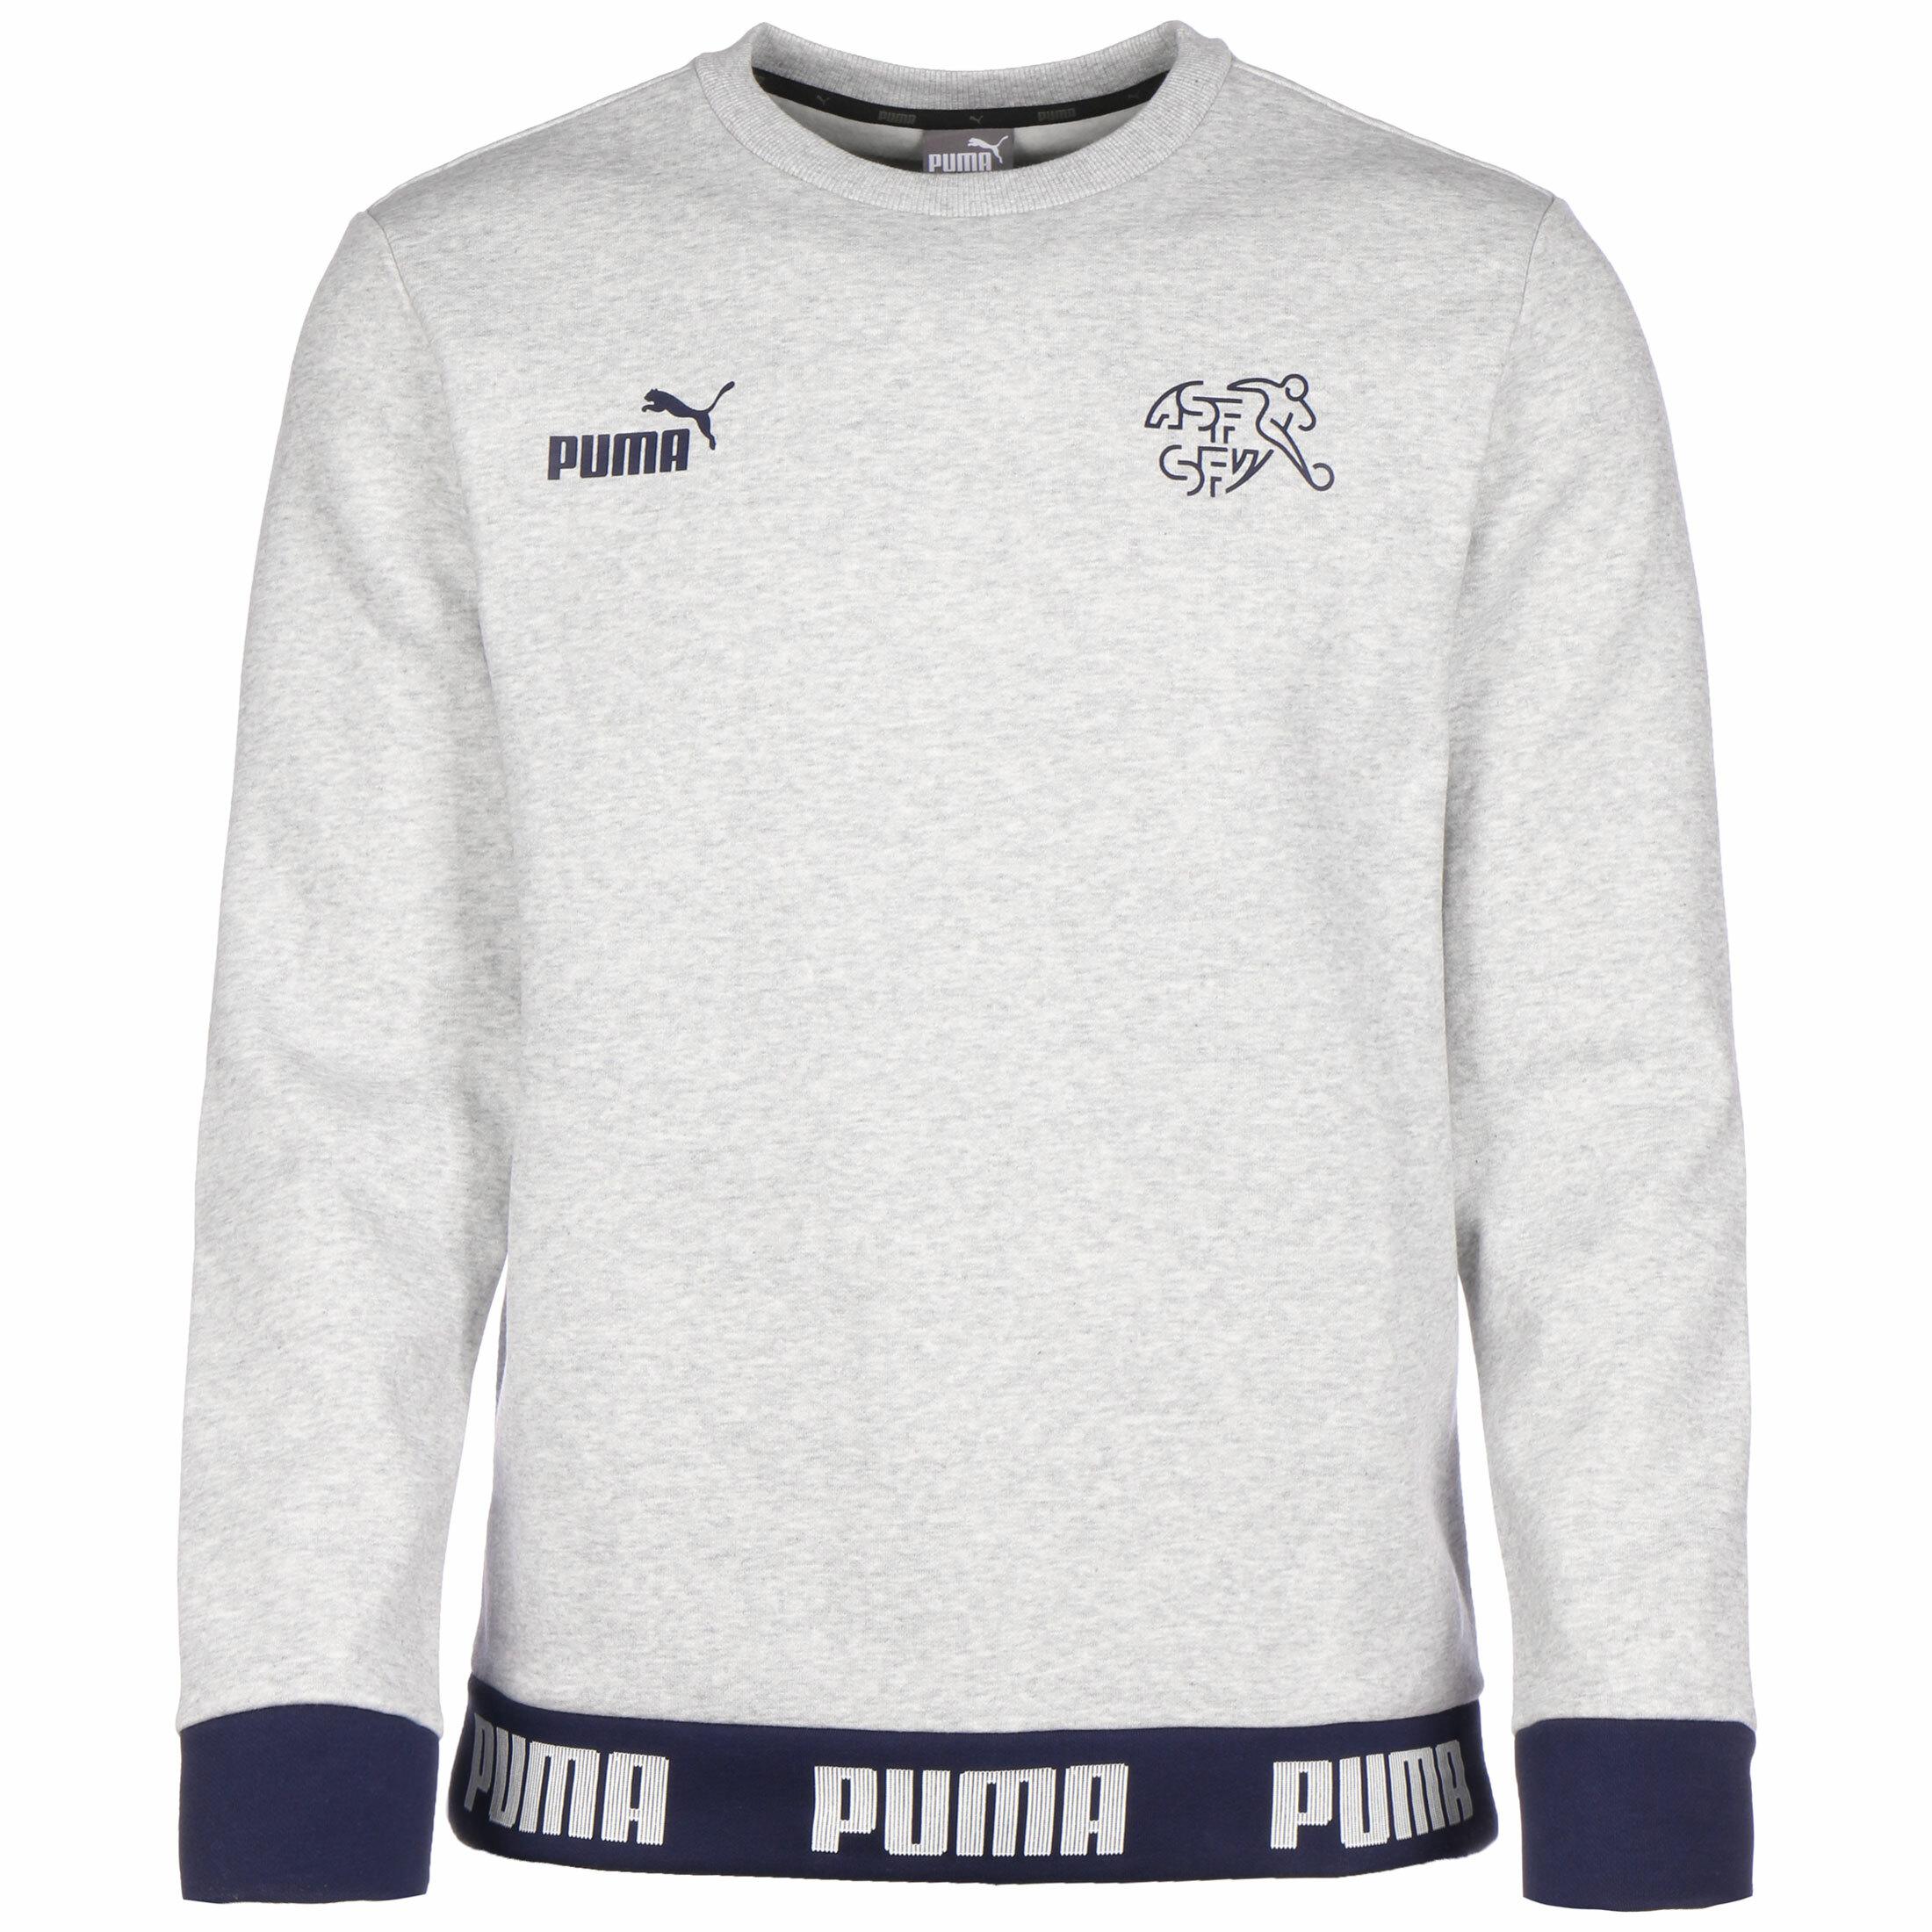 puma online shop schweiz